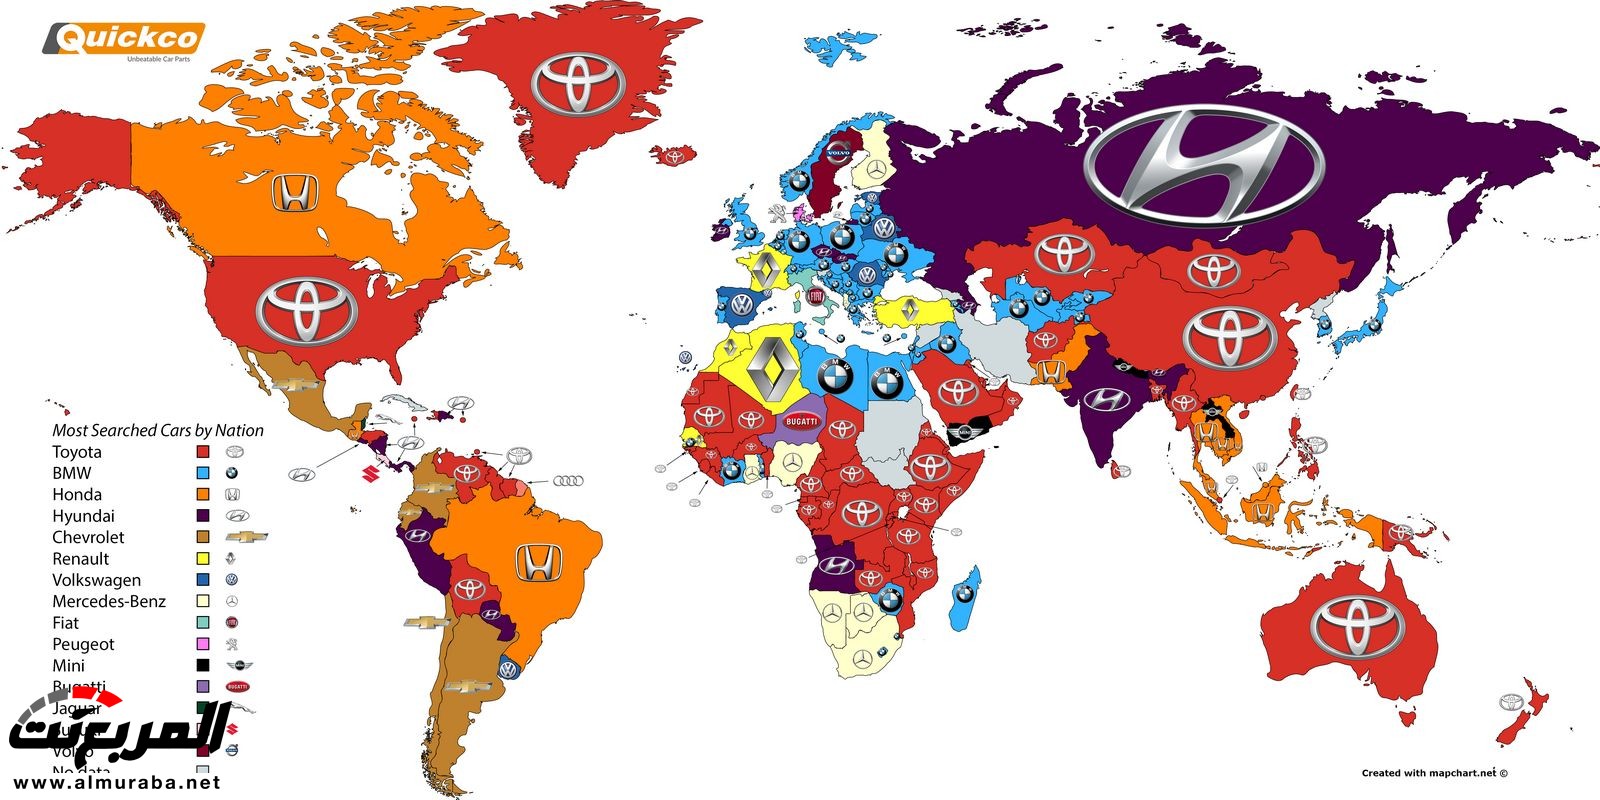 خارطة تبين أكثر علامات السيارات التجارية بحثا بدول العالم 2